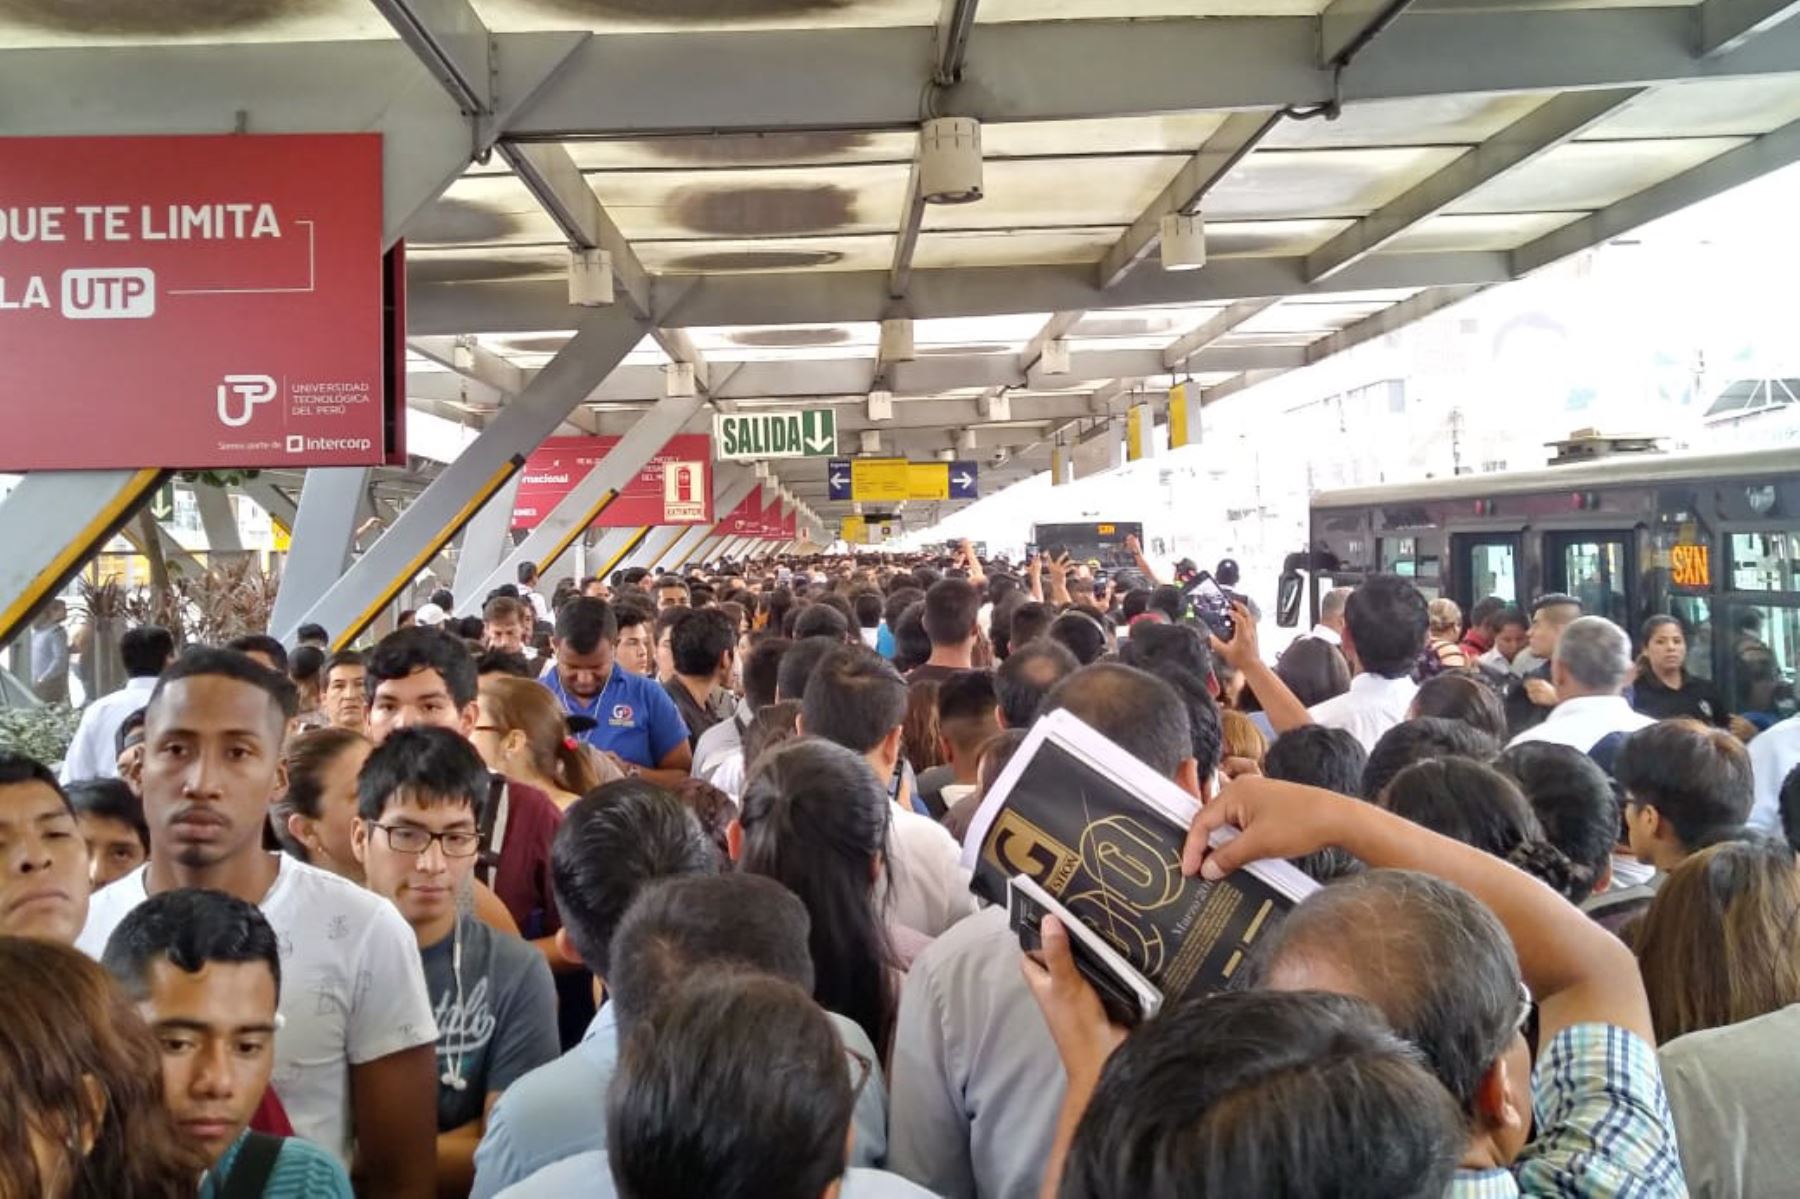 08:00 horas. Confusión en las filas. Así lucía la estación Naranjal hoy en hora punta. Foto: ANDINA/Rocío Rojas.